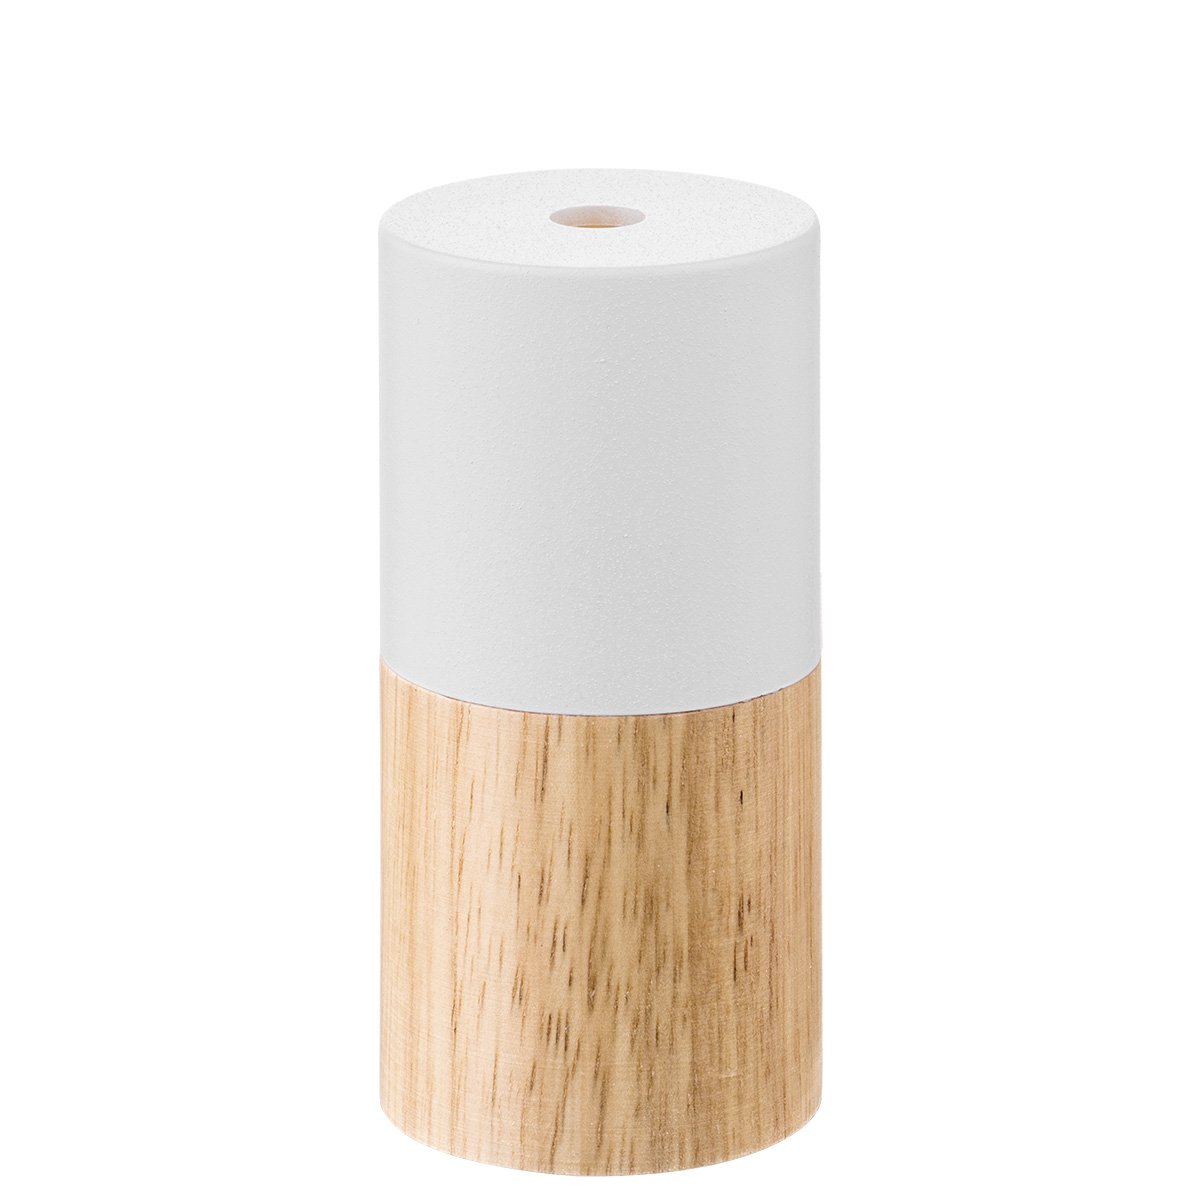 lamp holder plastic + wood - sand white + natural